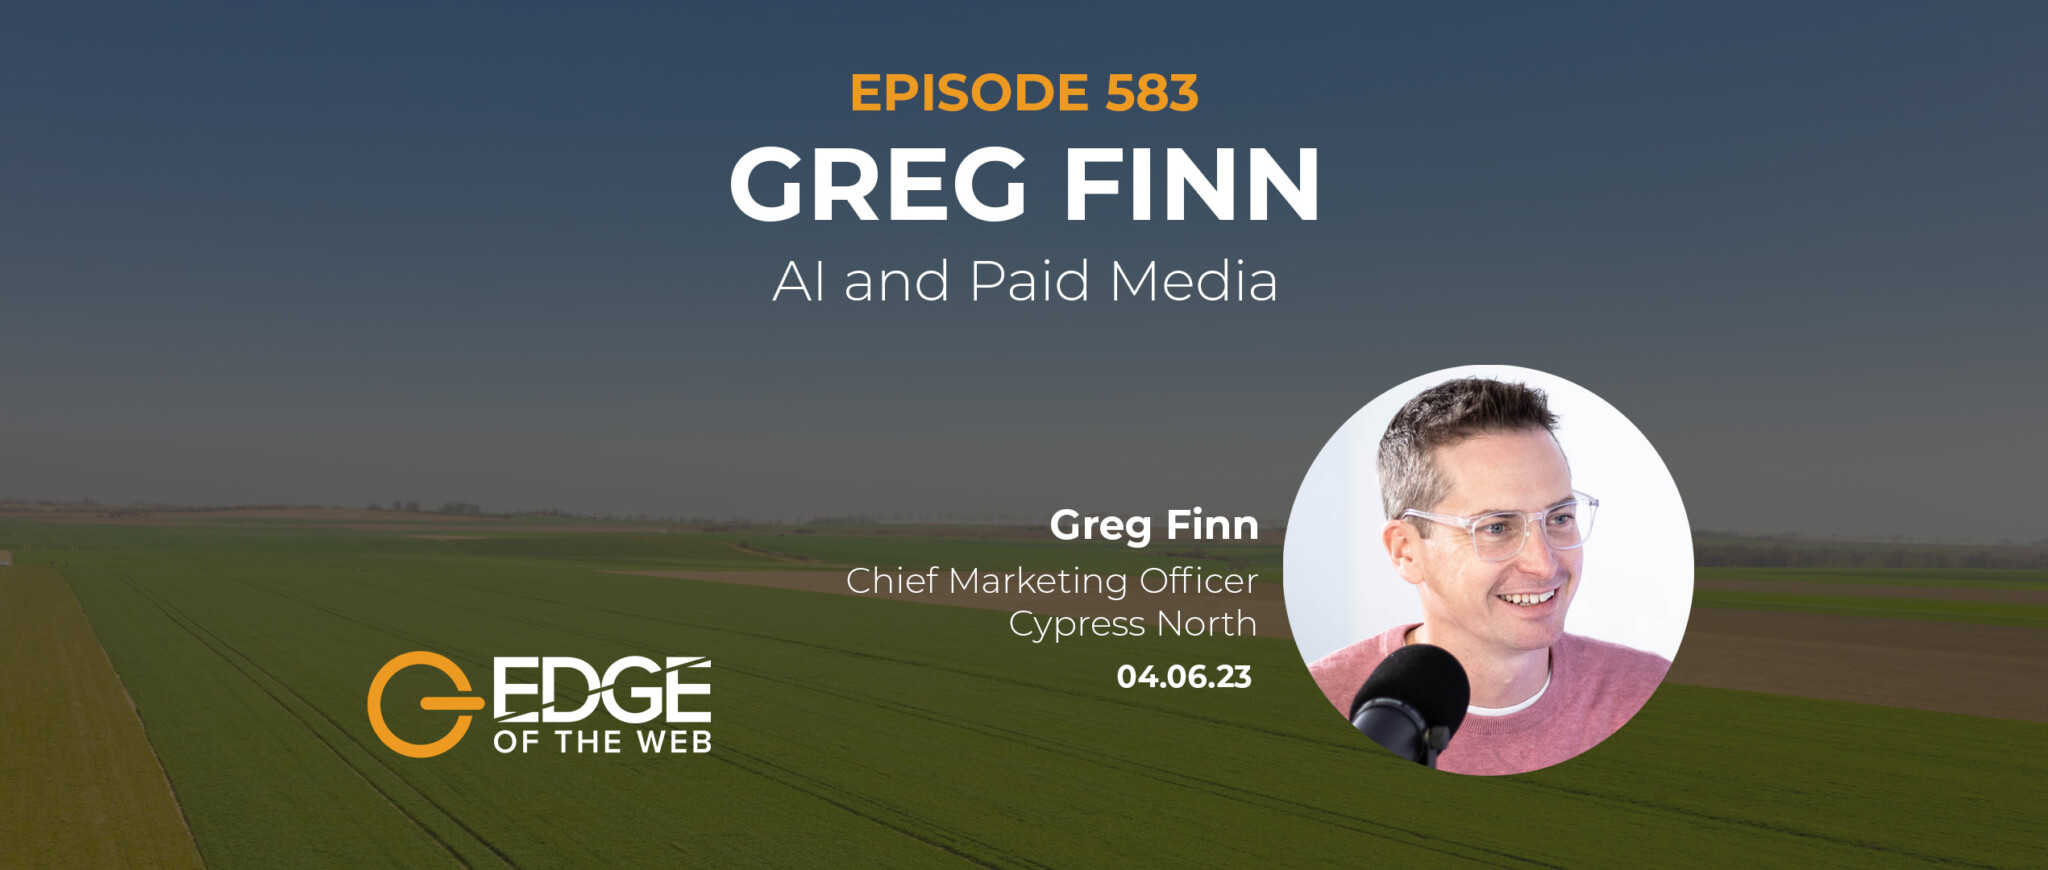 Greg Finn EDGE Episode 583 Featured Image